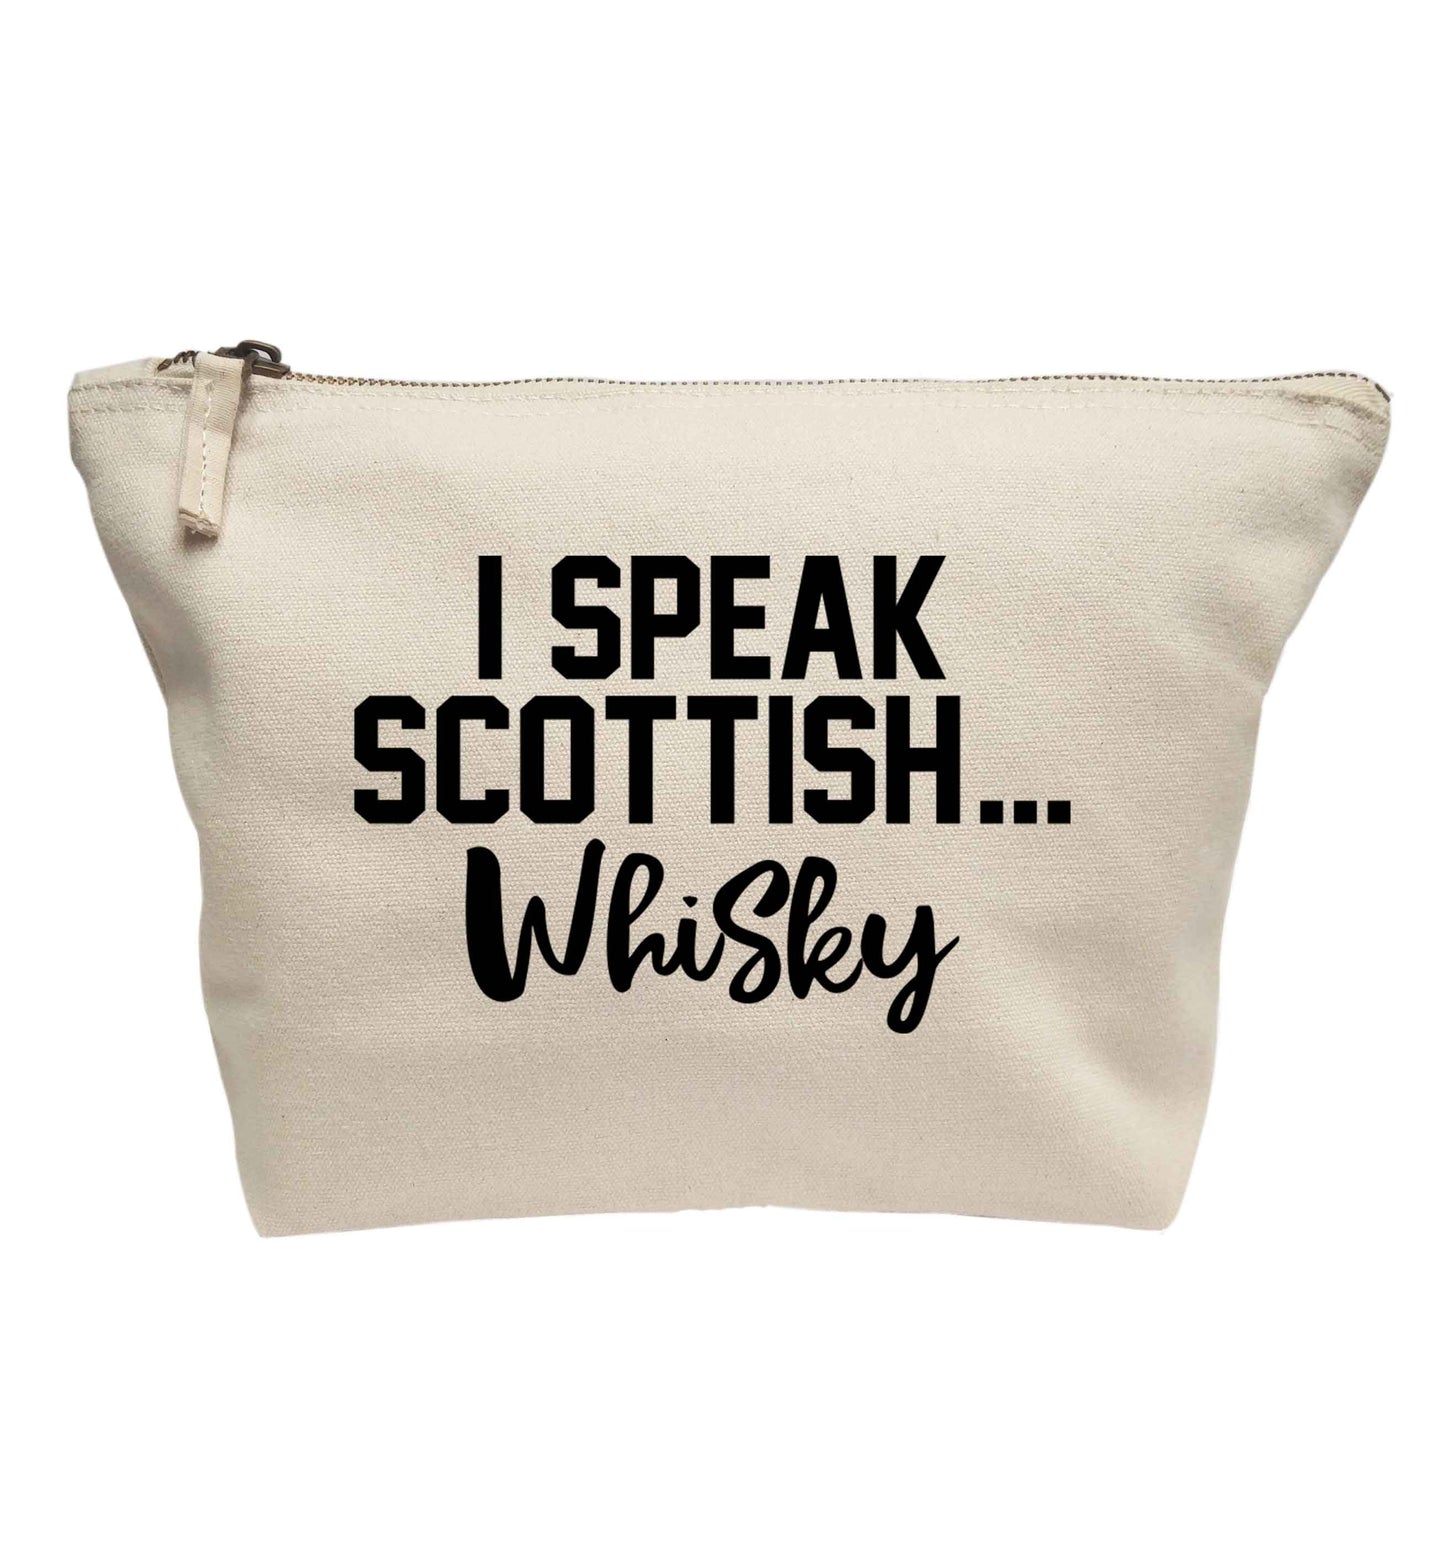 I speak scottish...whisky | makeup / wash bag